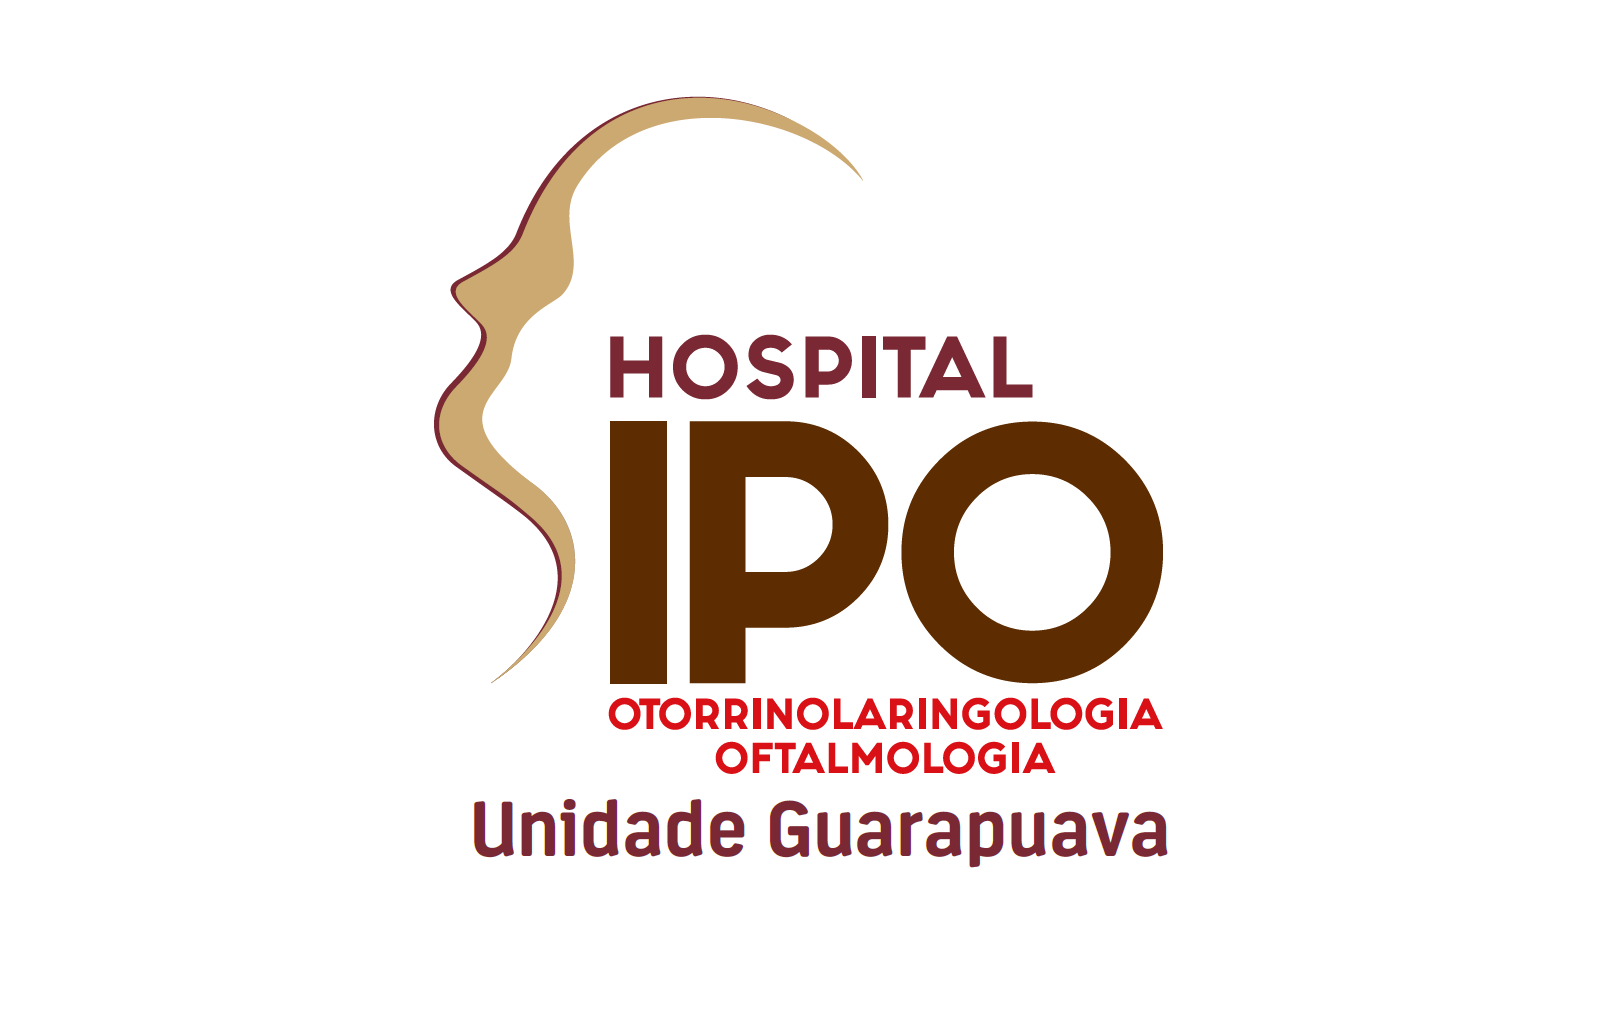 HOSPITAL IPO - UNIDADE GUARAPUAVA